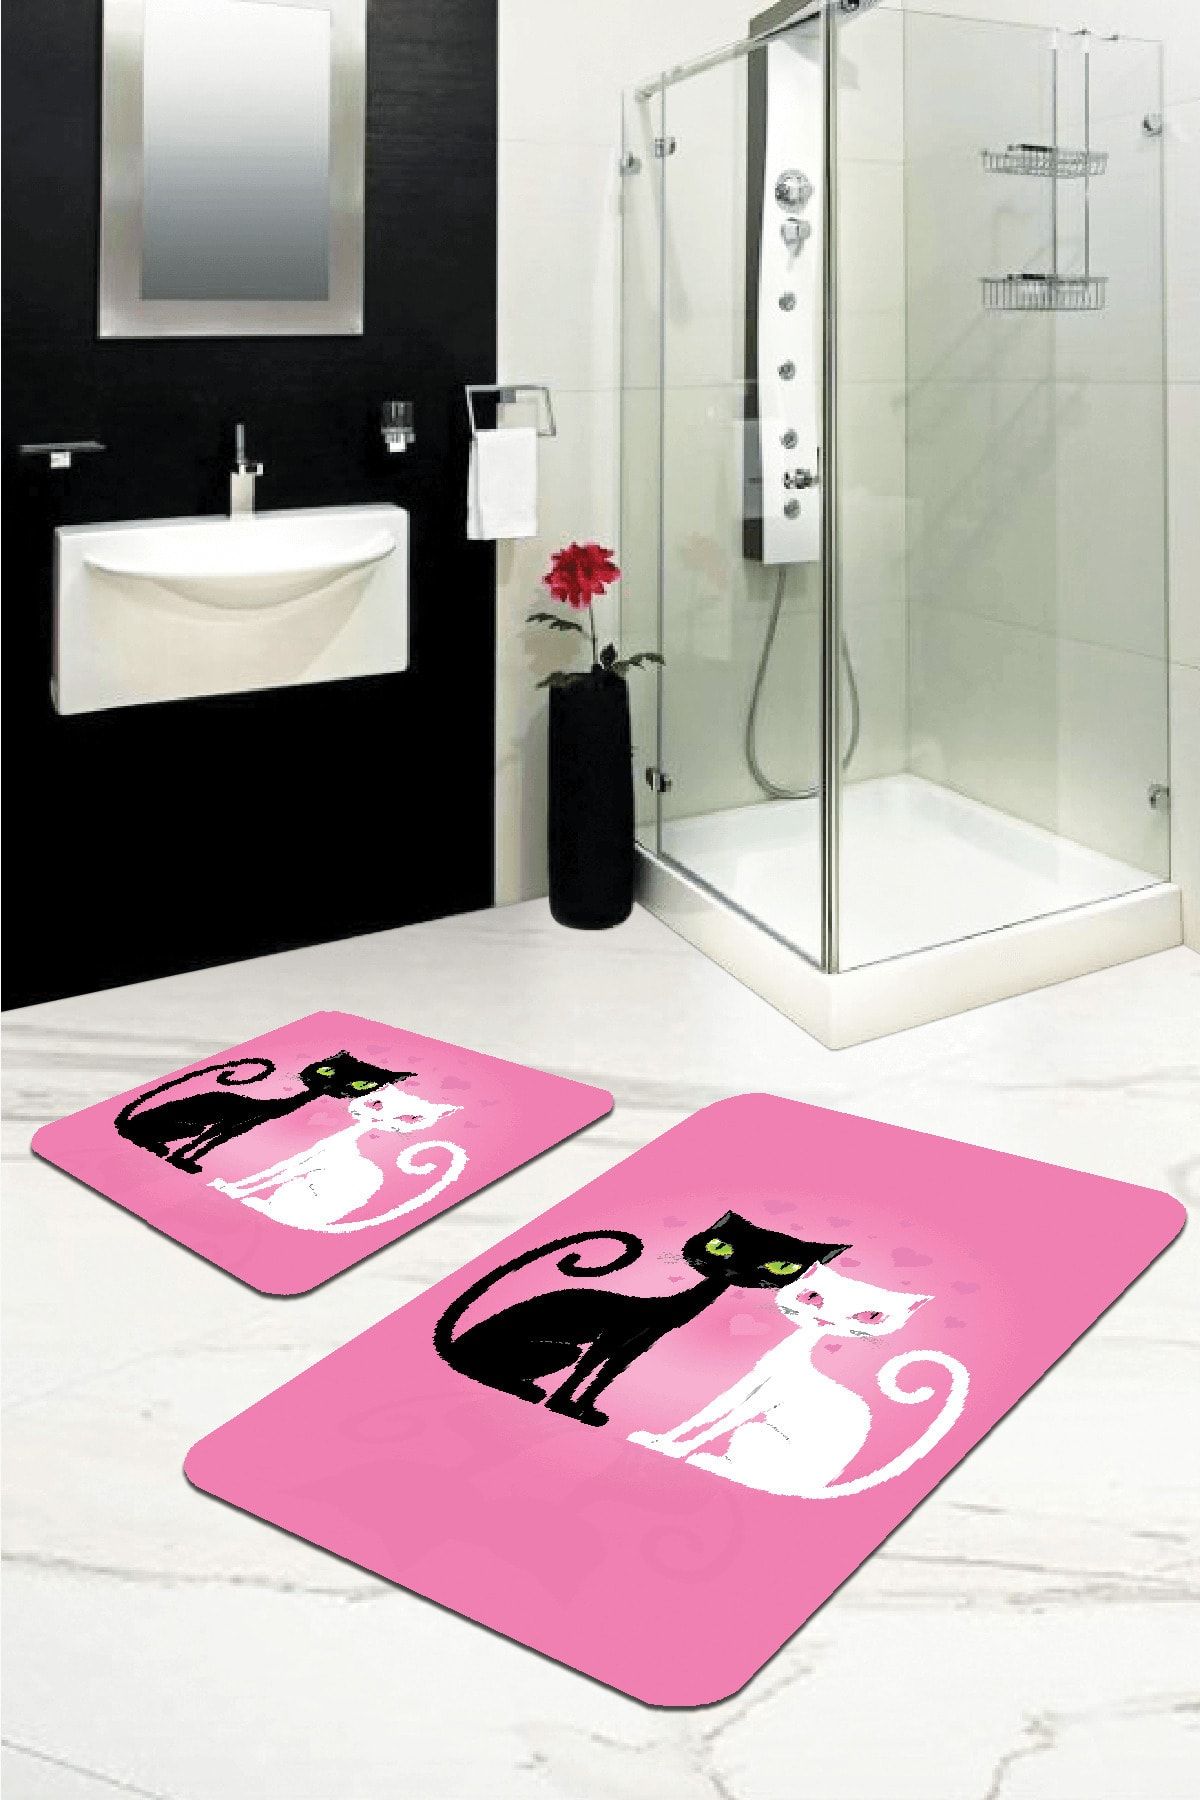 RugViva Dijital Banyo Halısı Klozet Takımı 2'li Paspas Seti Bs262 50x80cm + 50x50cm